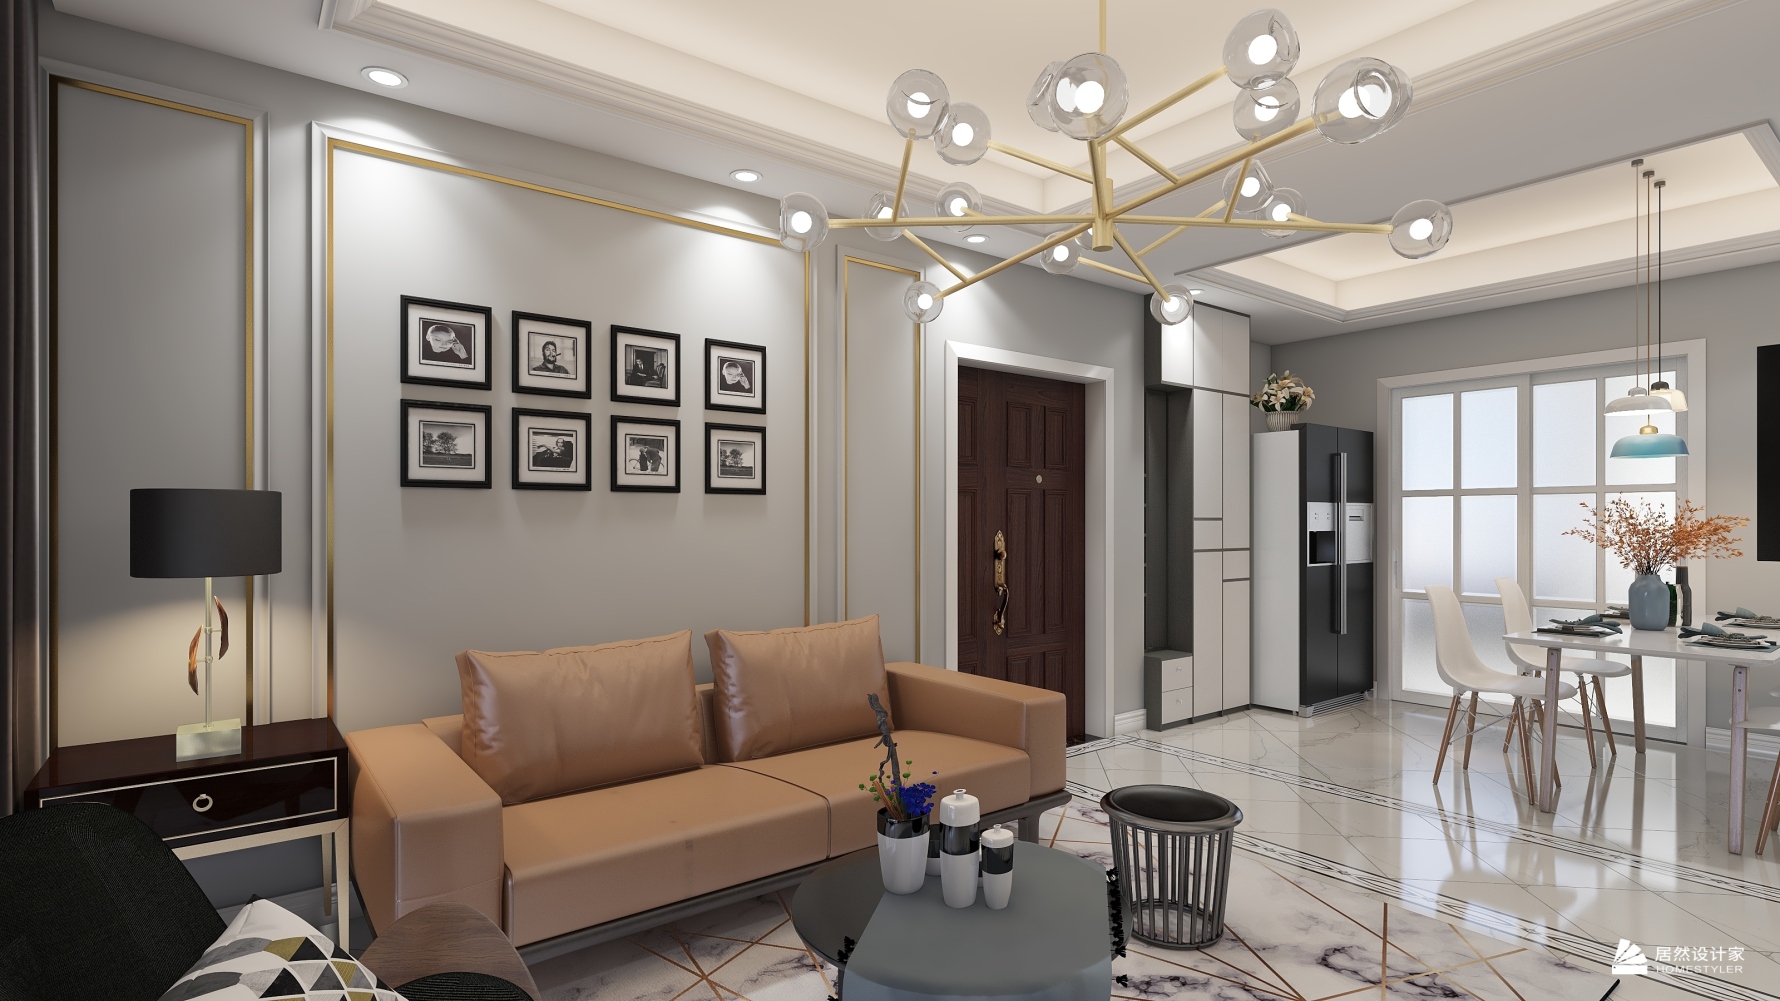 金色阳光 - 其它风格三室两厅装修效果图 - YIXIU010设计效果图 - 每平每屋·设计家